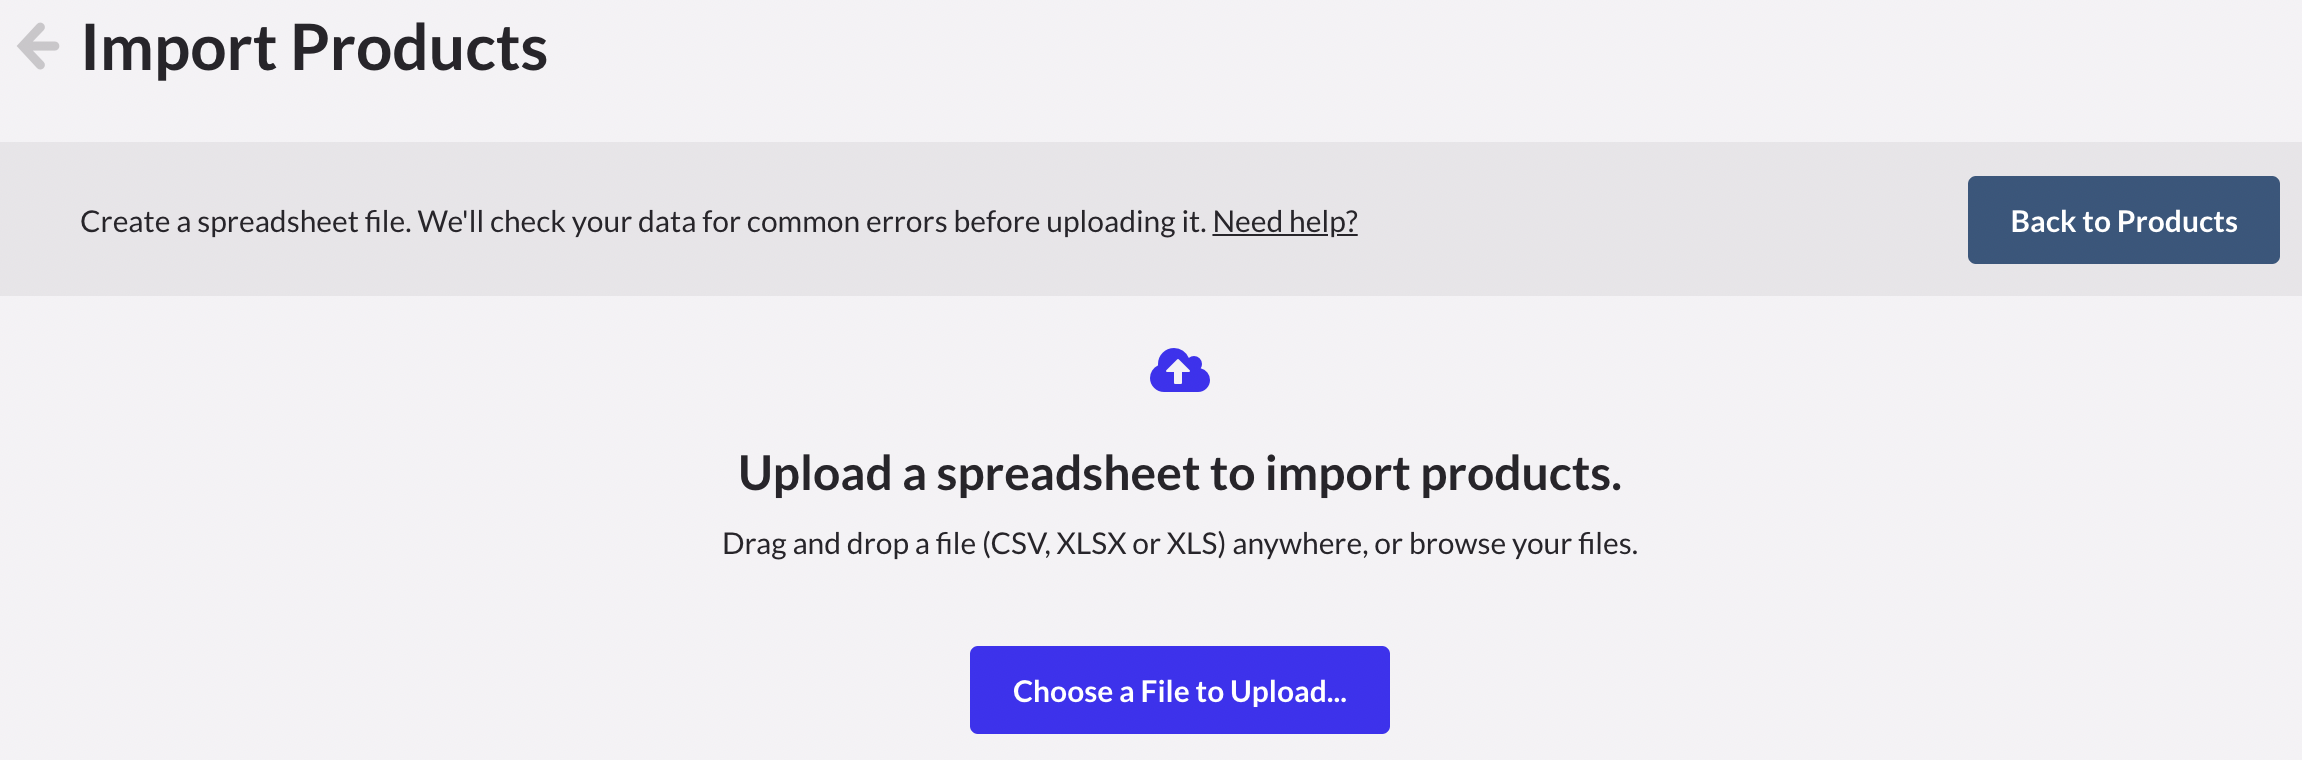 De pagina Producten importeren toont het gedeelte Een spreadsheet uploaden om producten te importeren en de knop daarvoor.